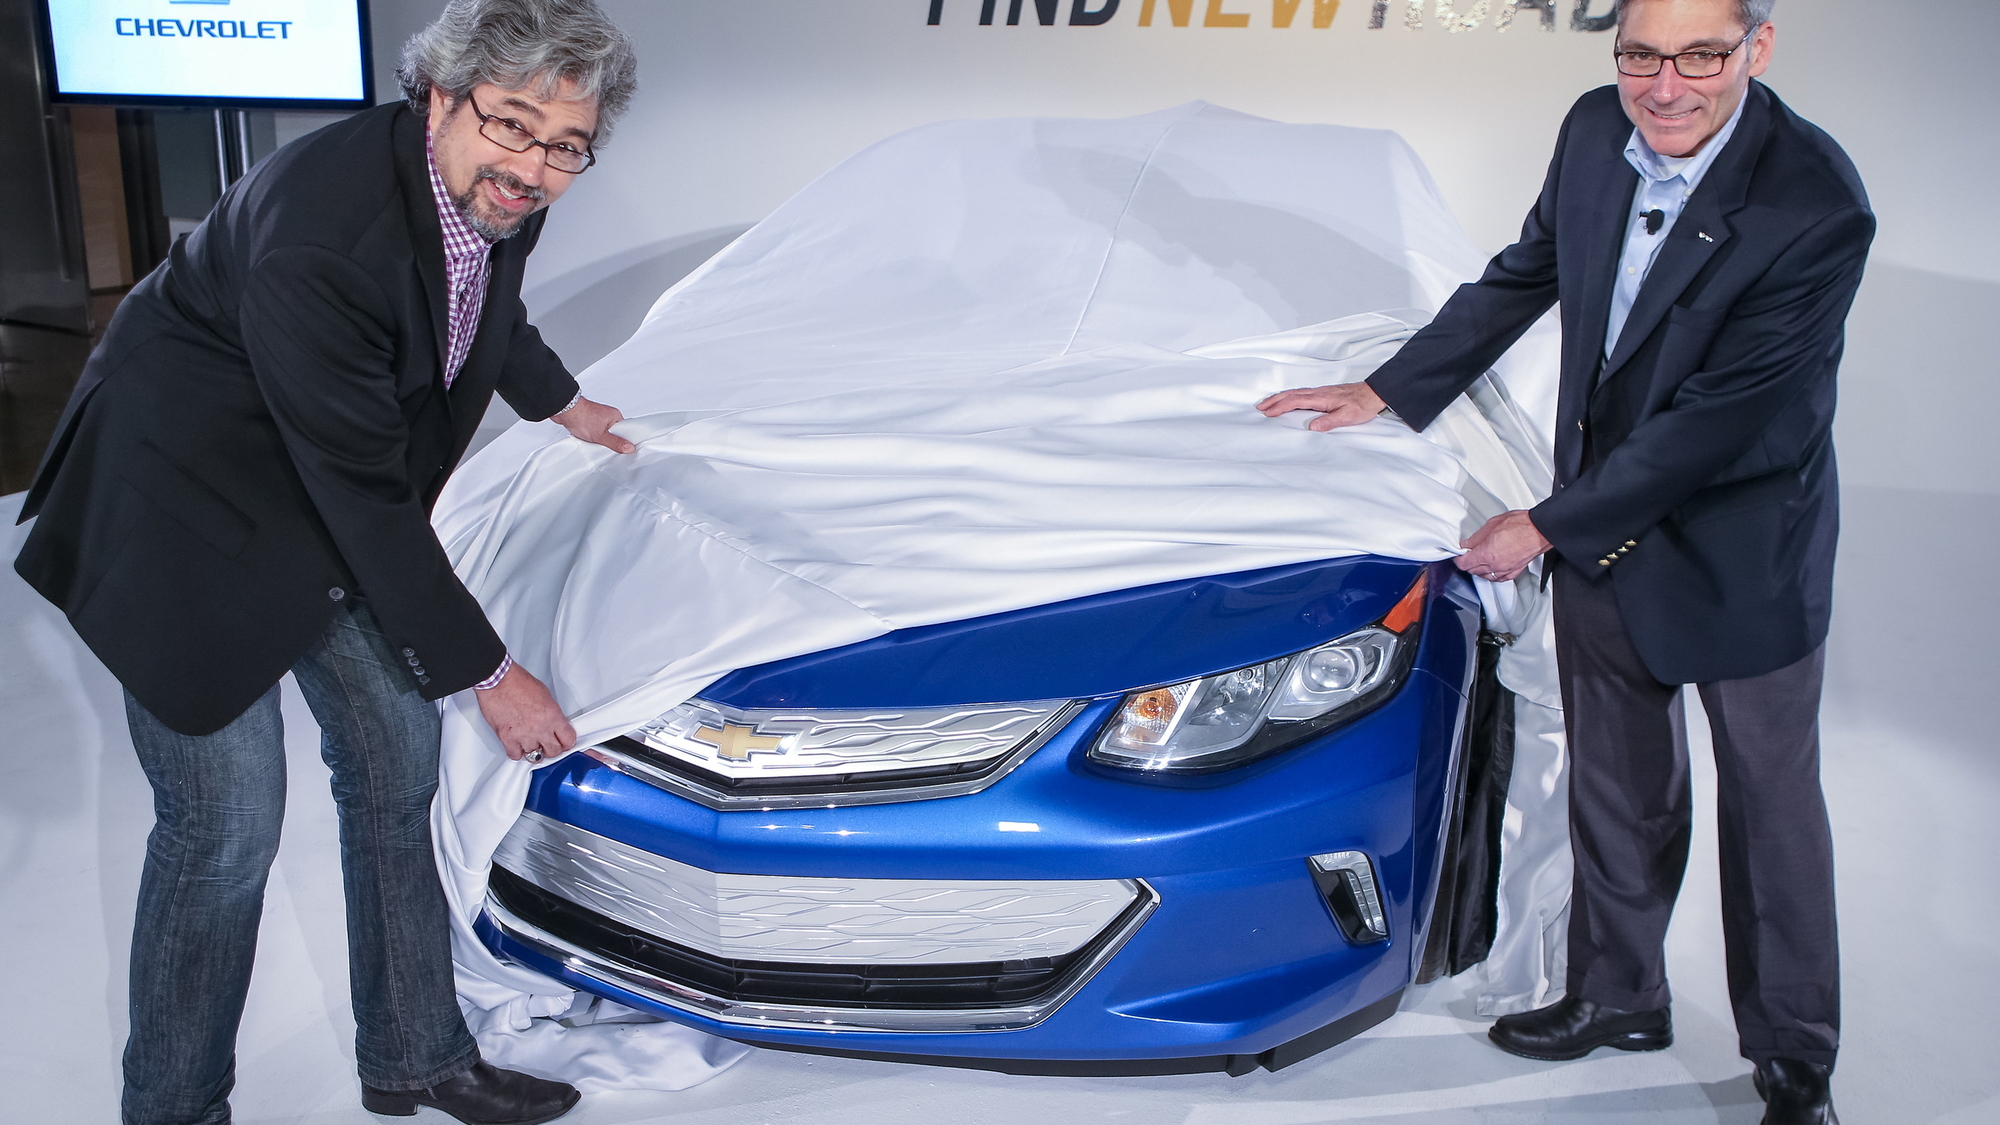 2016 Chevrolet Volt sneak peek for owners, Los Angeles, Nov 2014